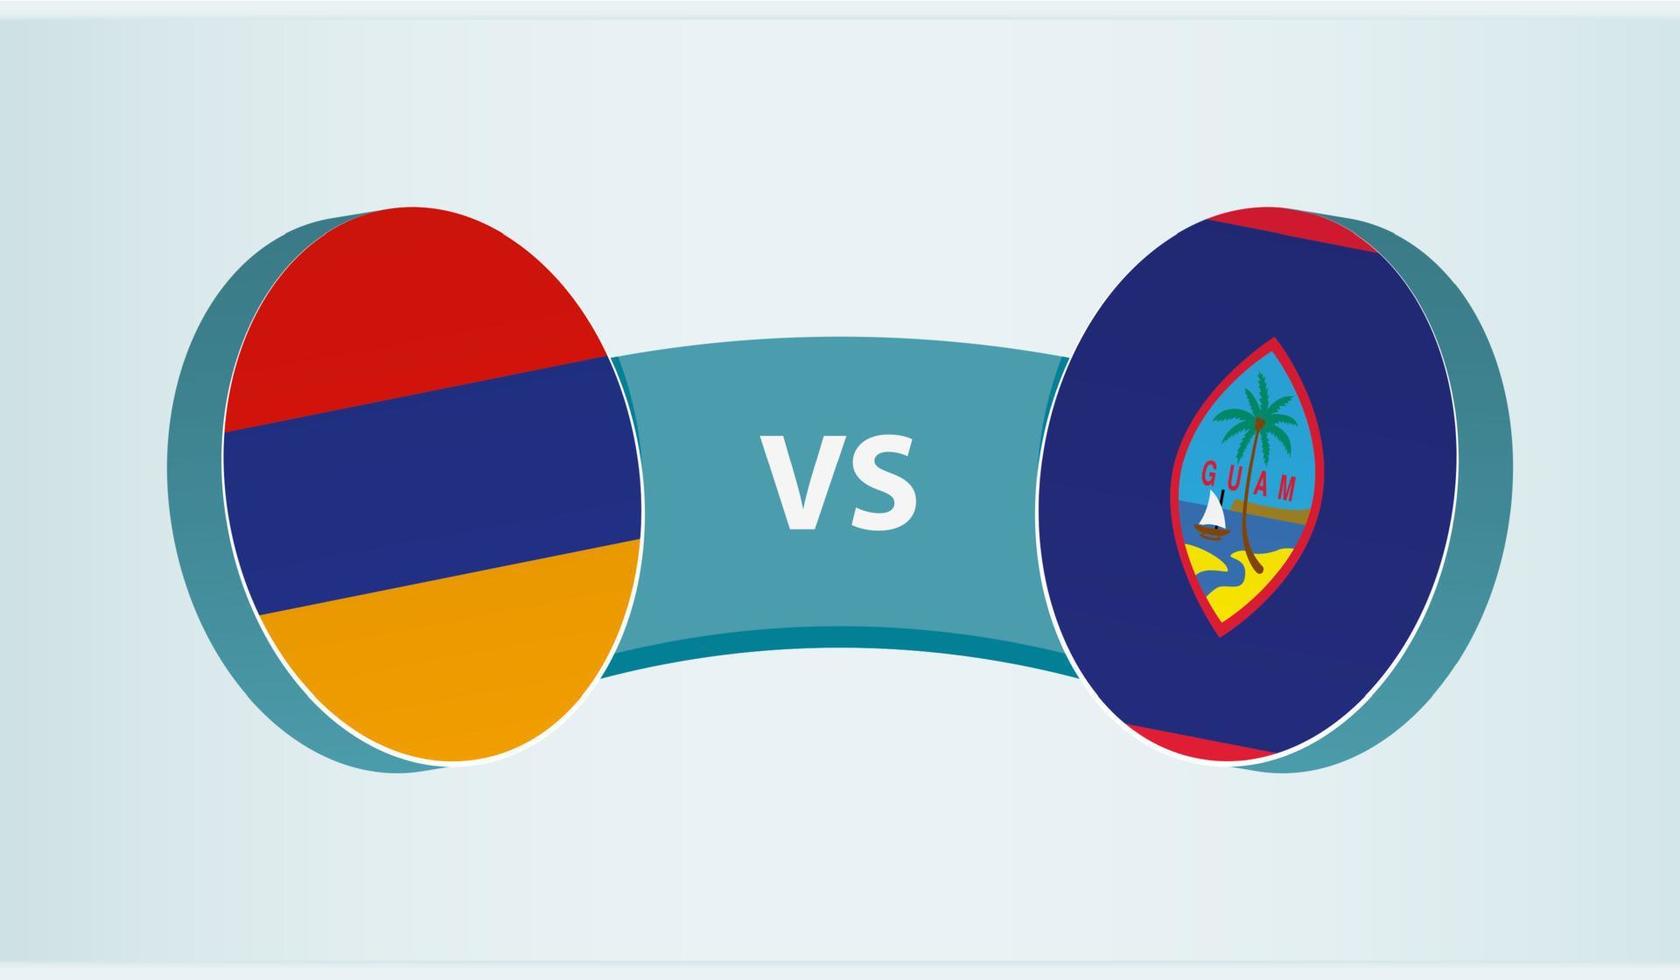 Armenia versus Guam, team sports competition concept. vector